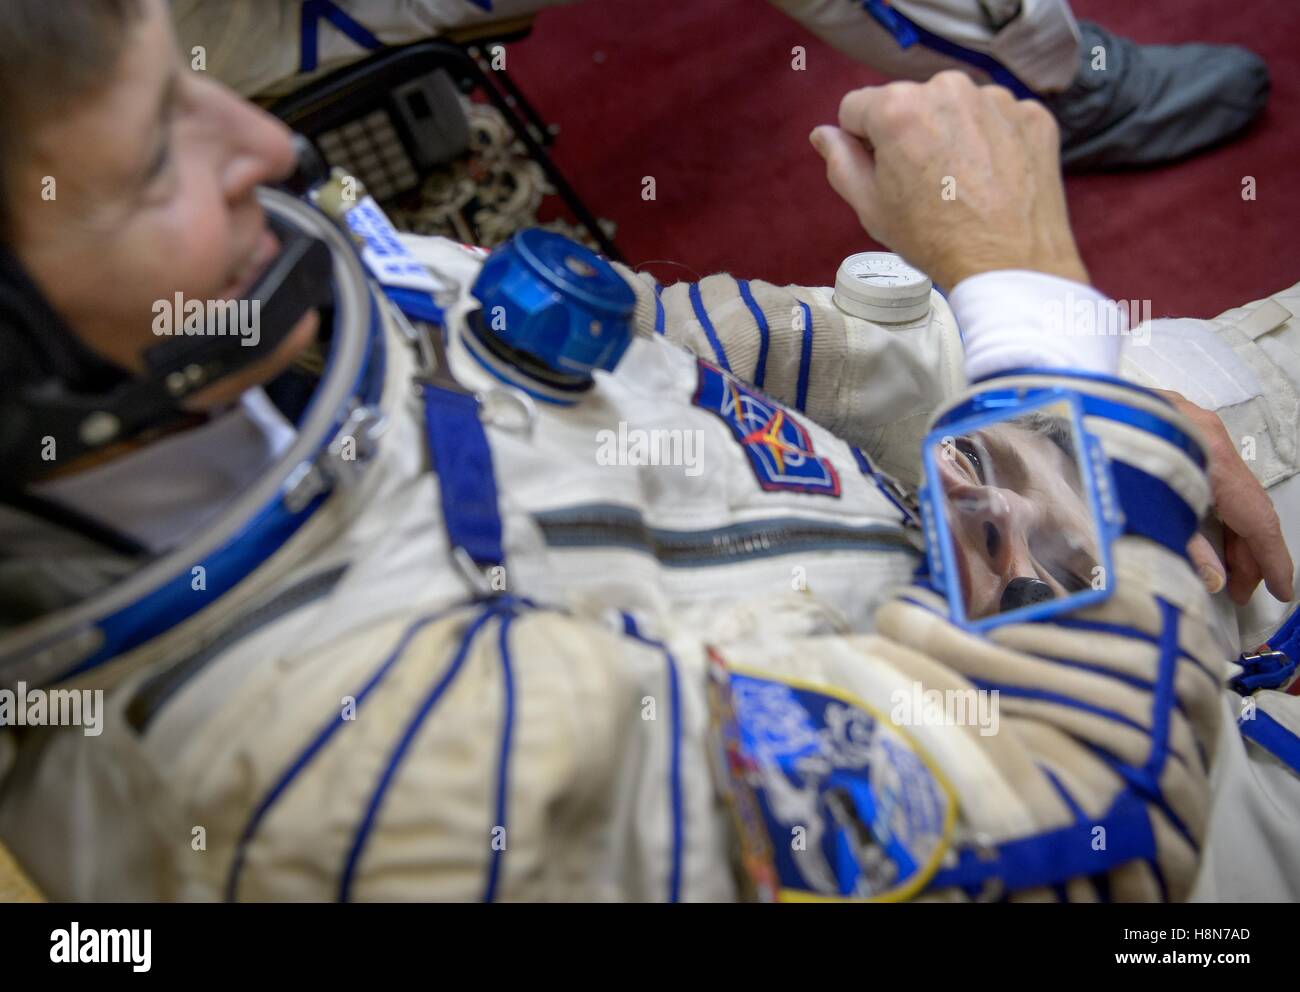 NASA internationale Raumstation Sojus-MS-03 Mission Prime Crew Astronaut amerikanischen Peggy Whitson setzt auf ihre Sokul Start und Eintrag Raumanzug vor der endgültigen Qualifikation Prüfungen 25. Oktober 2016 in Star City, Russland. Stockfoto